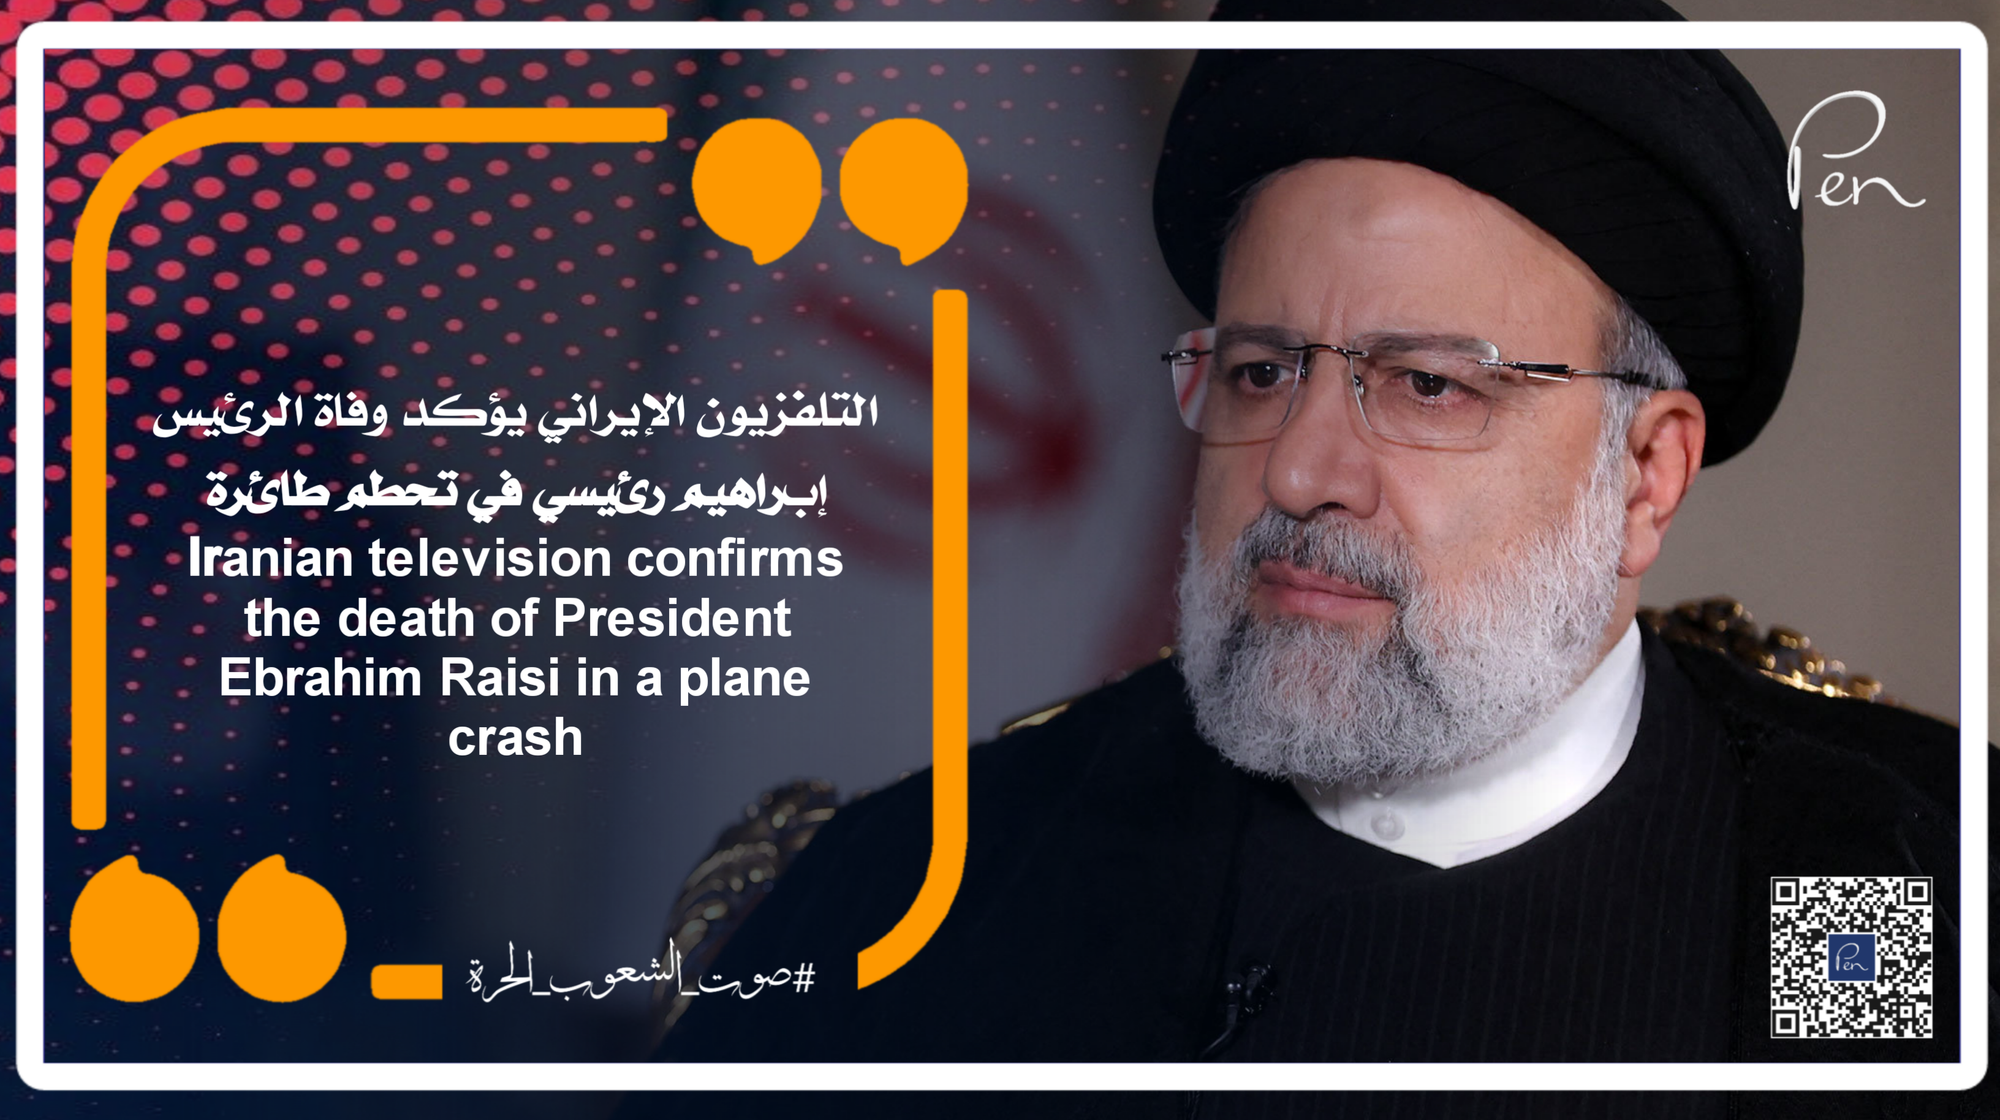 التلفزيون الإيراني يؤكد وفاة الرئيس إبراهيم رئيسي في تحطم طائرة